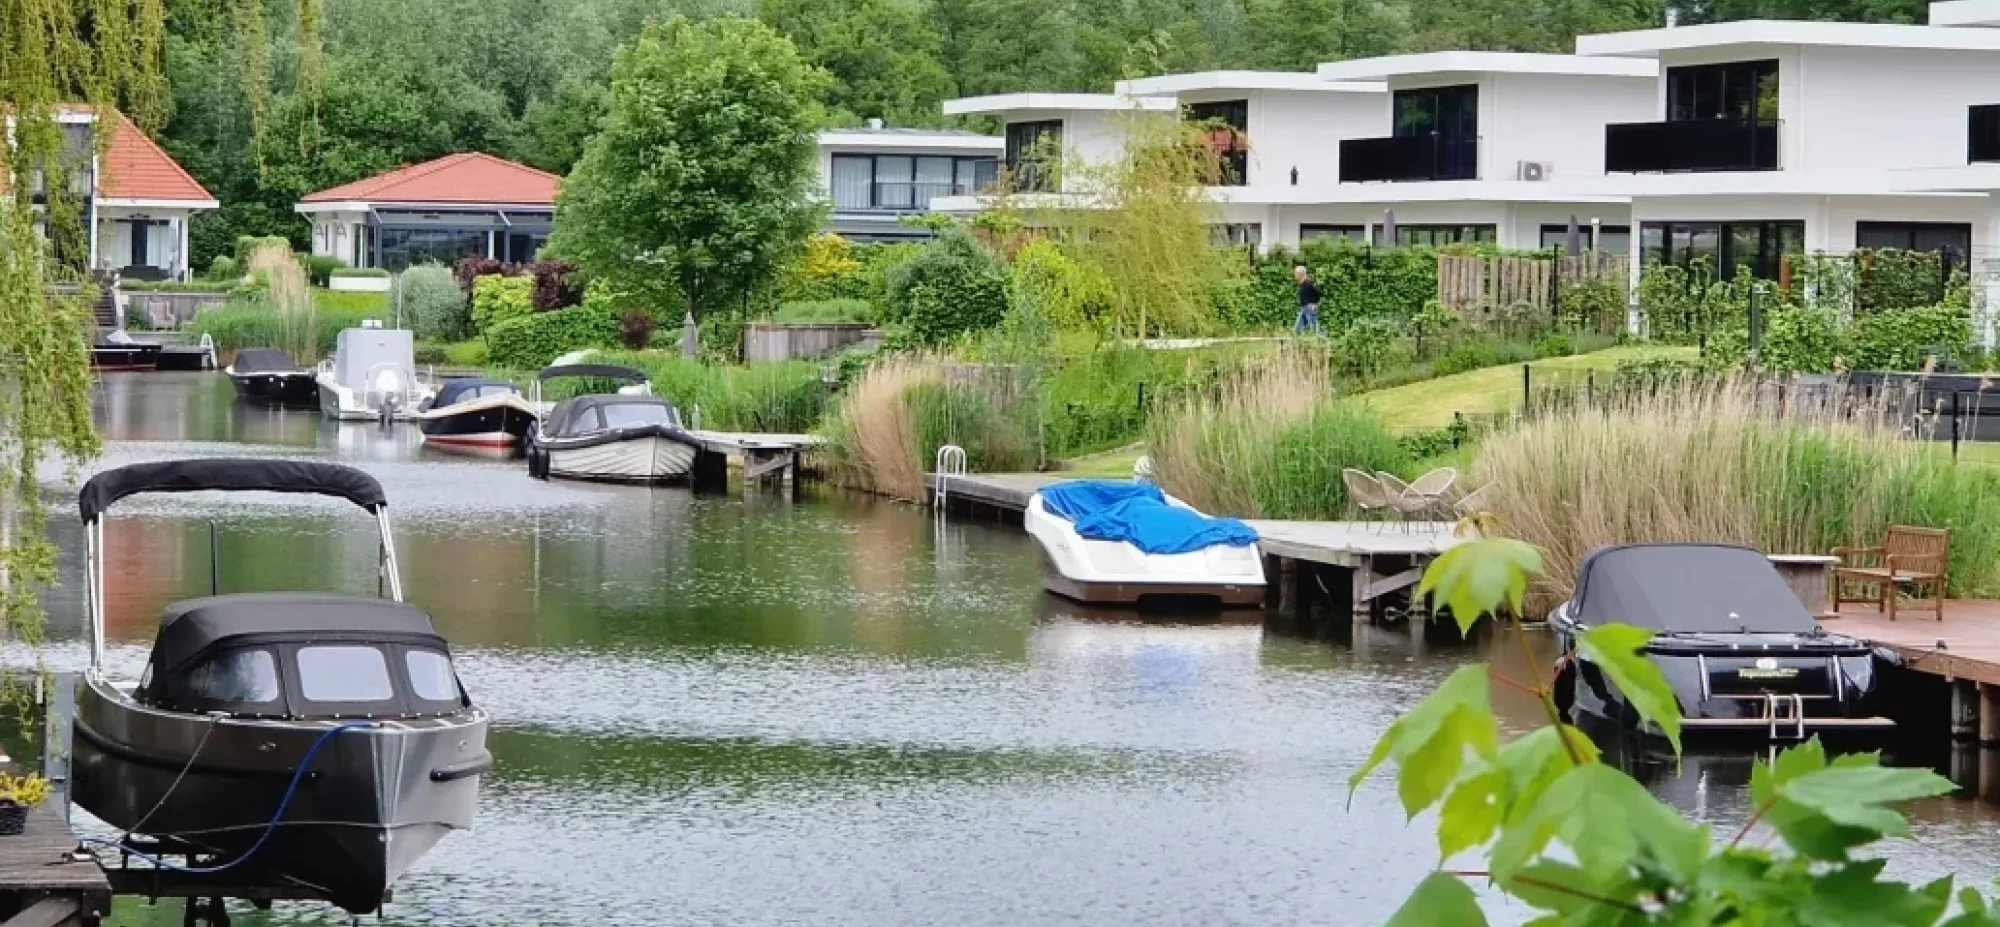 Ferienhaus mit Boot am Ijsselmeer mit Sportbooten + Kajak